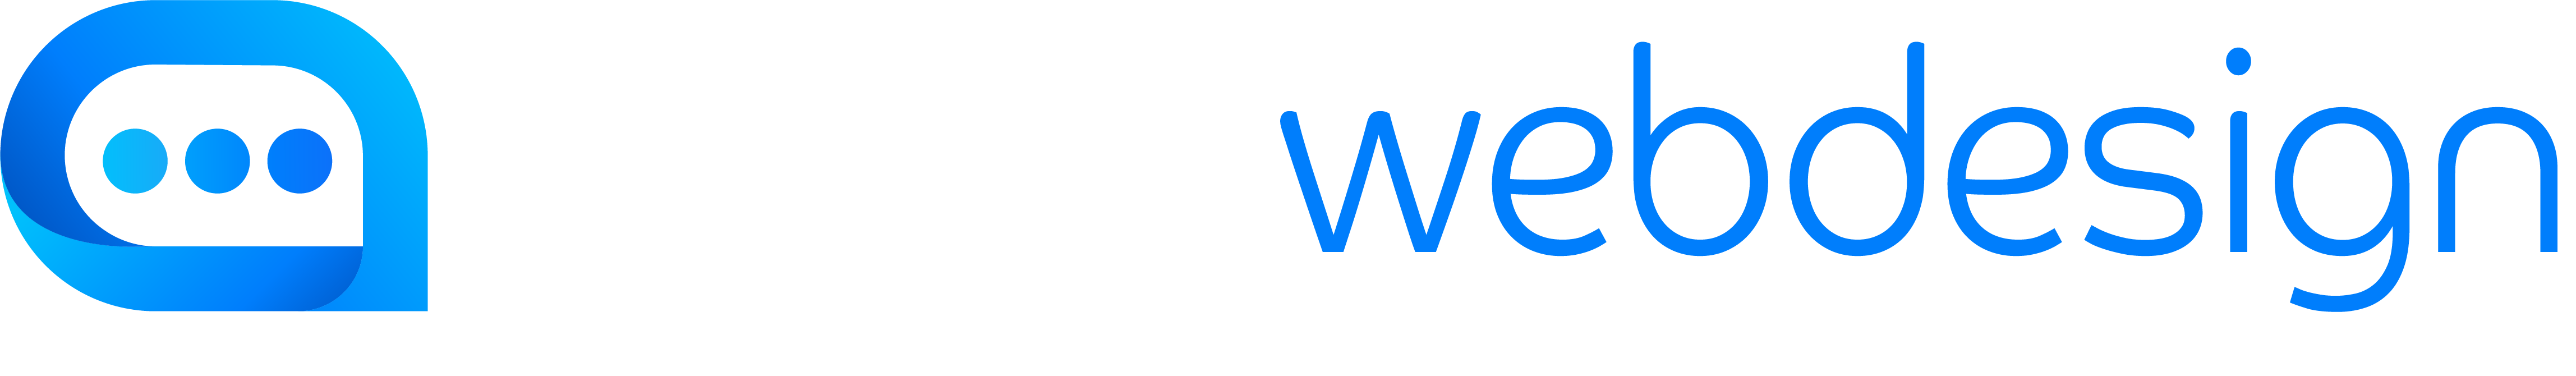 4783-logo-webdesign-hvit.png